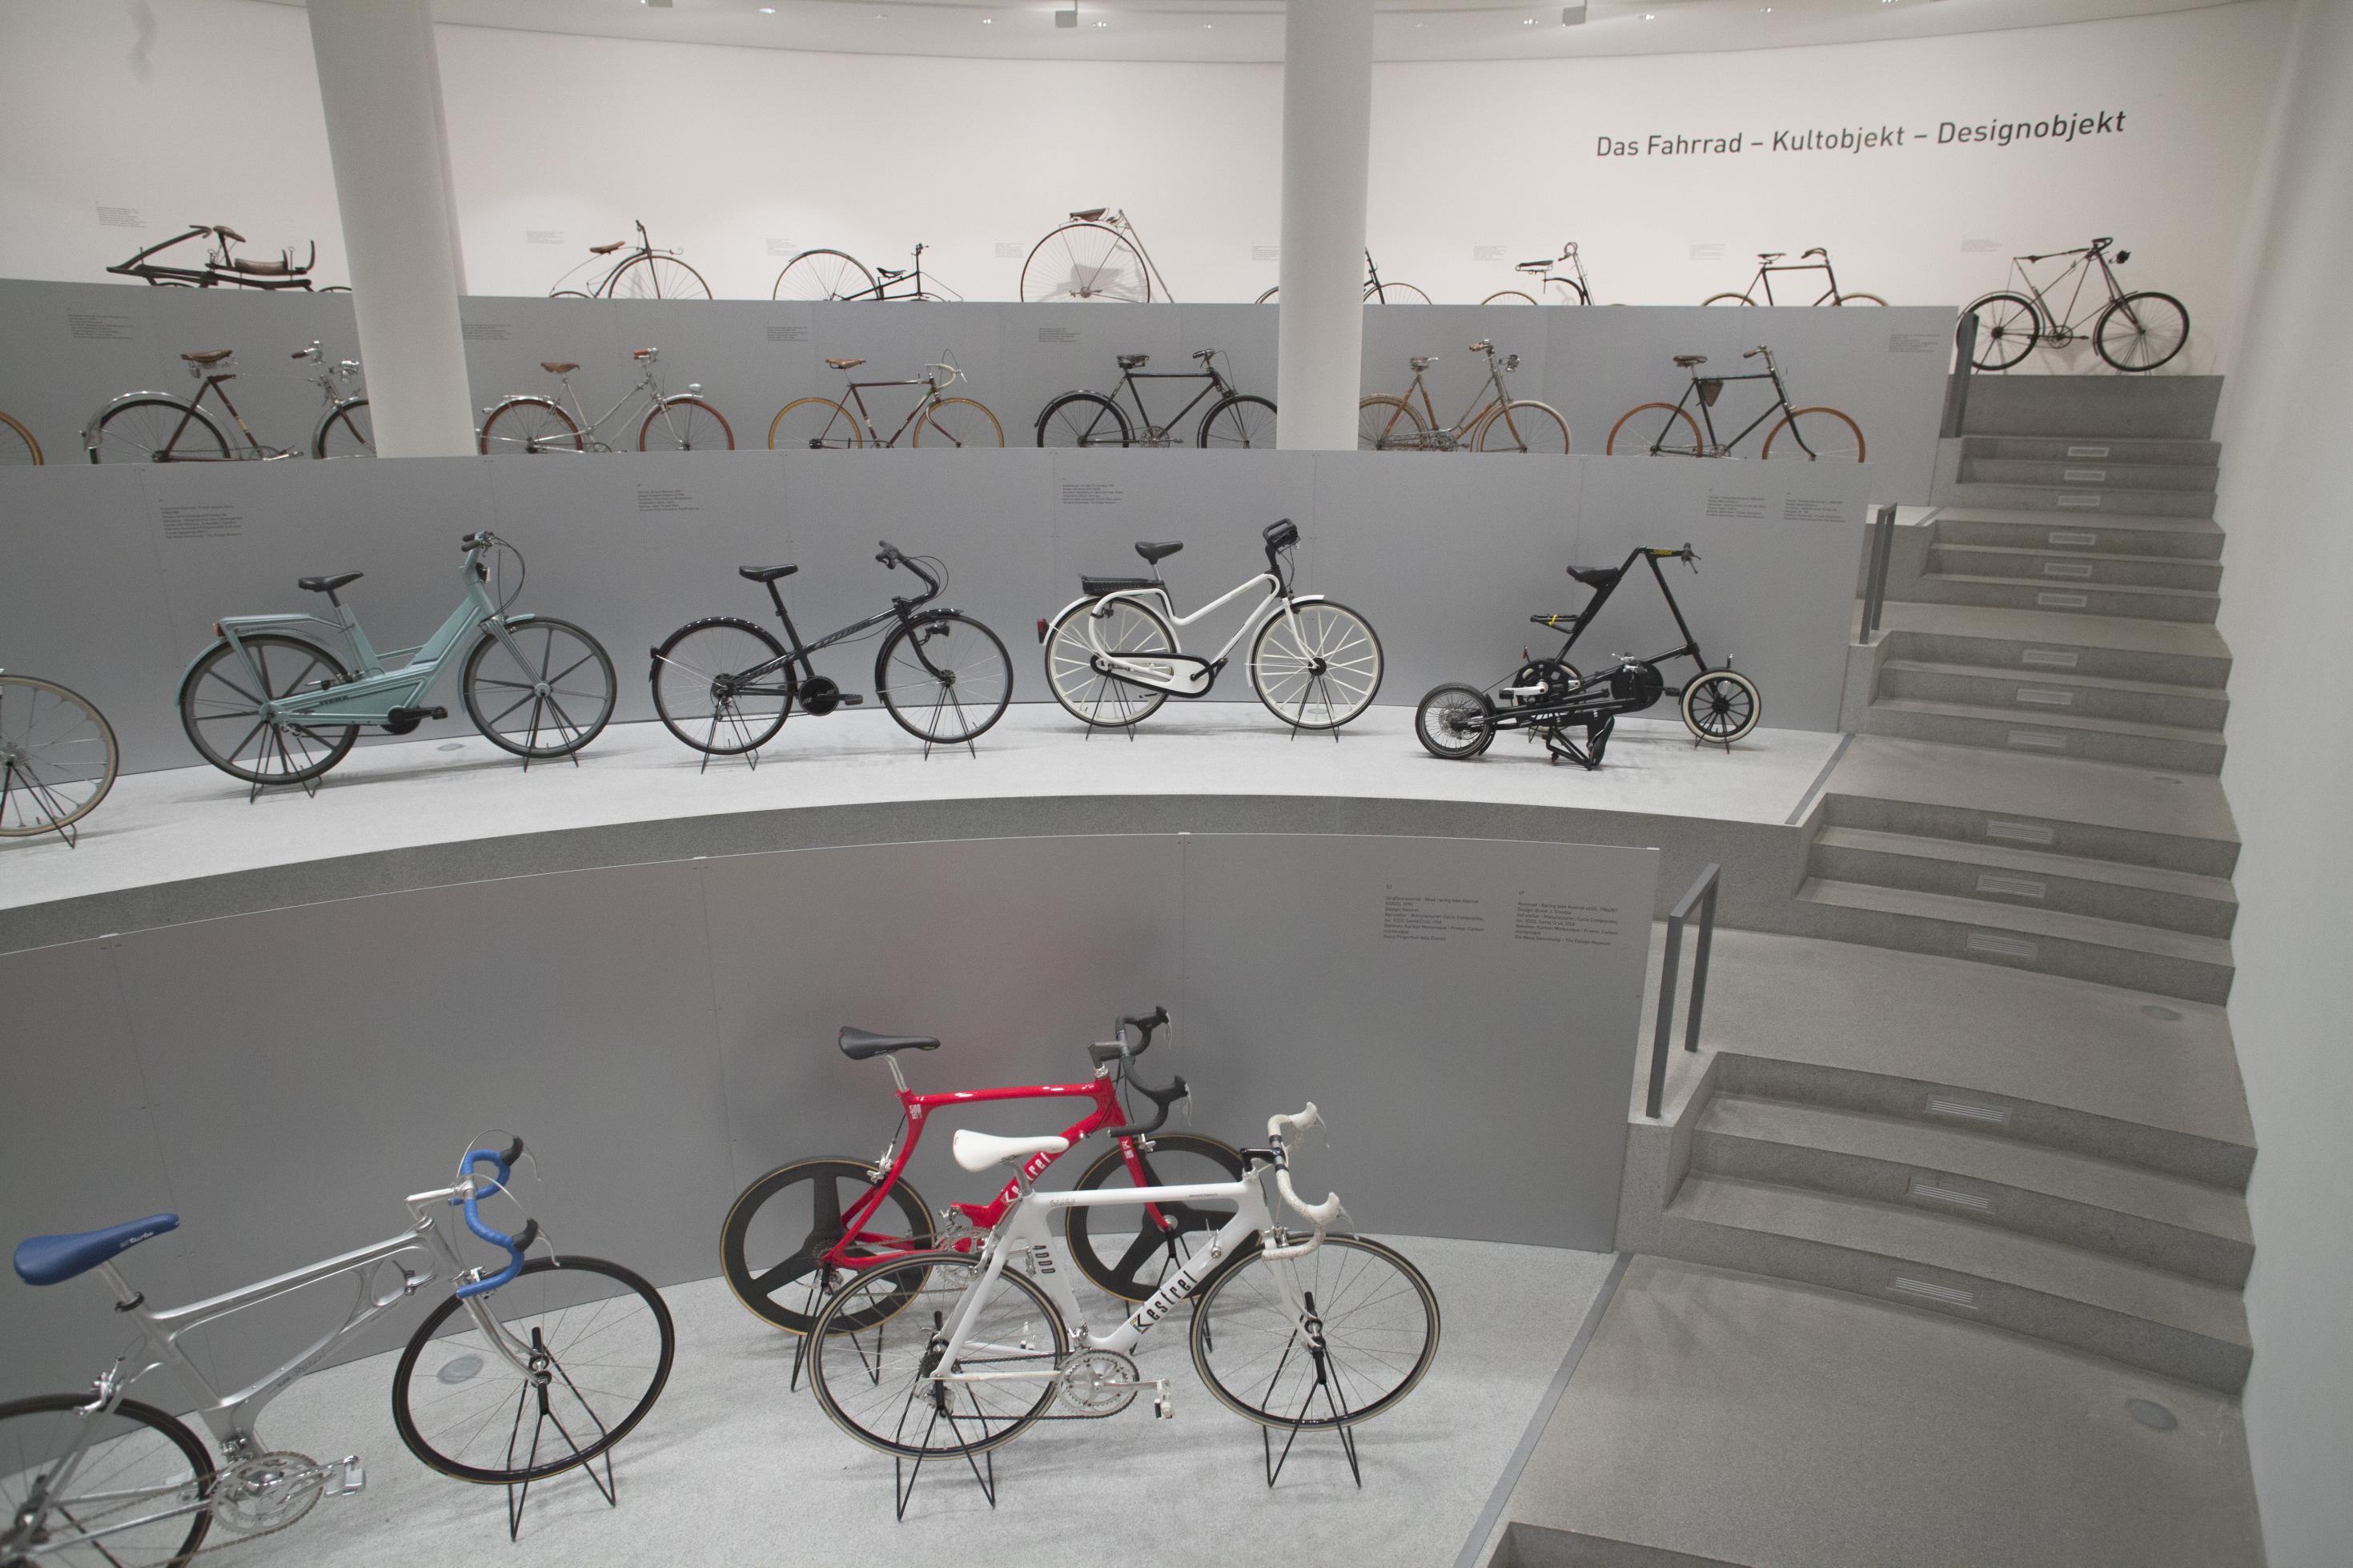 Blick ins Halbrund der Ausstellung  „Das Fahrrad – Kultobjekt – Designobjekt“ mit etlichen Vehikeln.